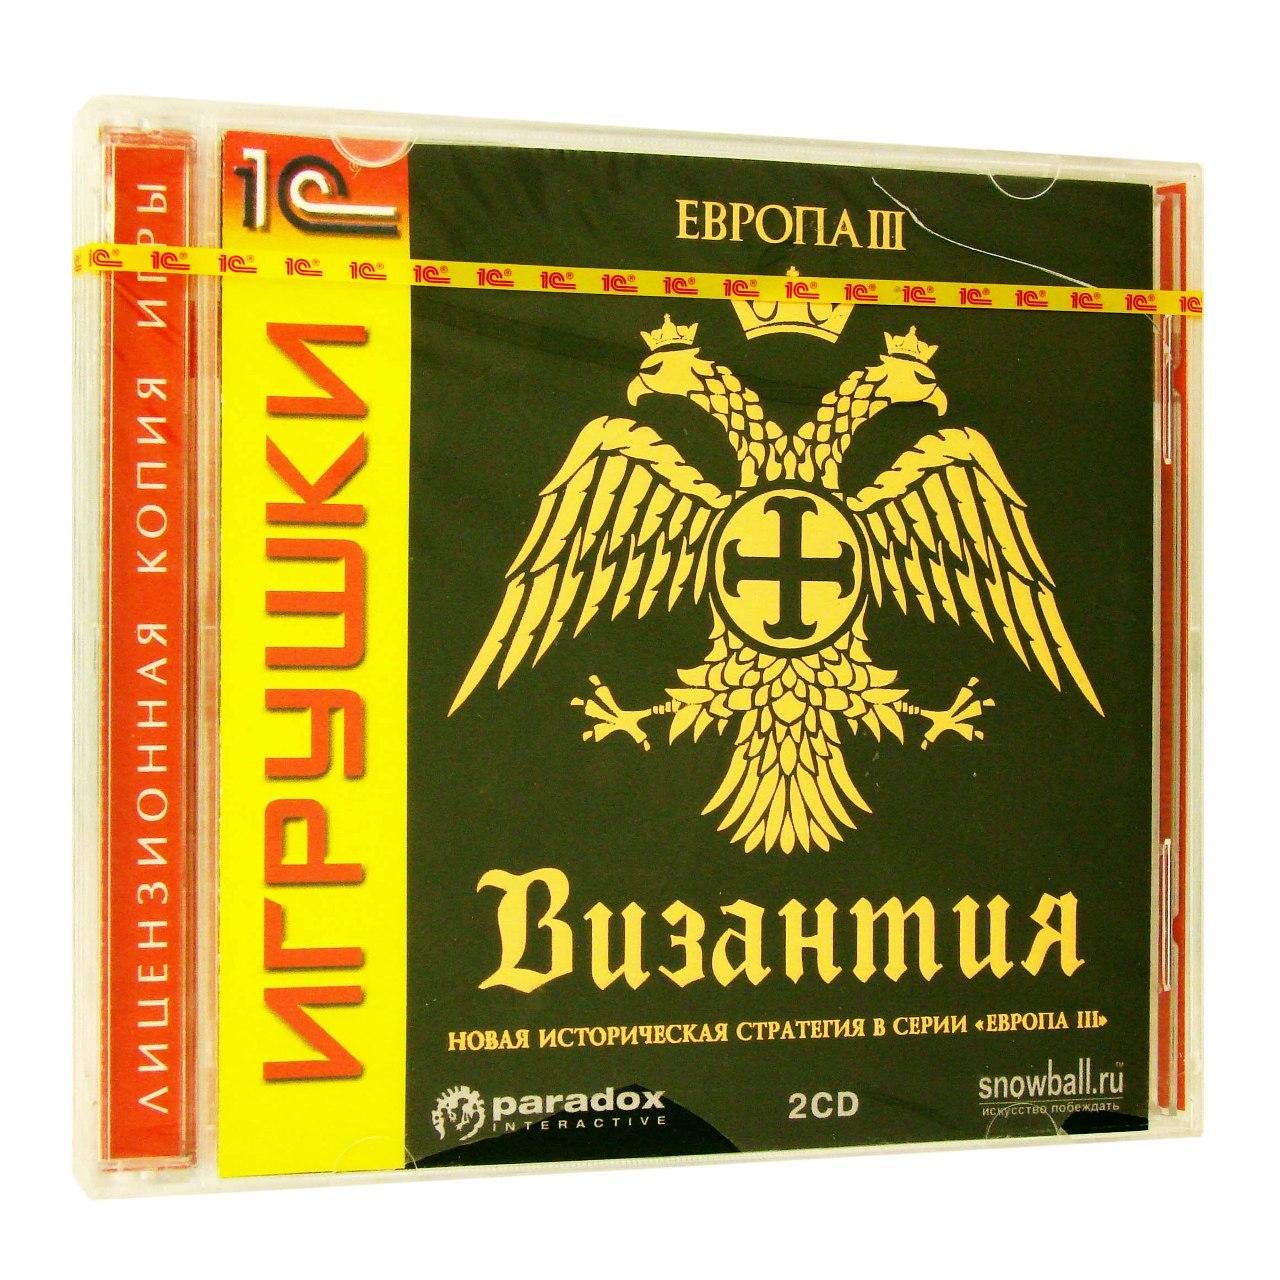 Компьютерный компакт-диск Европа 3. Византия (ПК), фирма "1С", 2CD